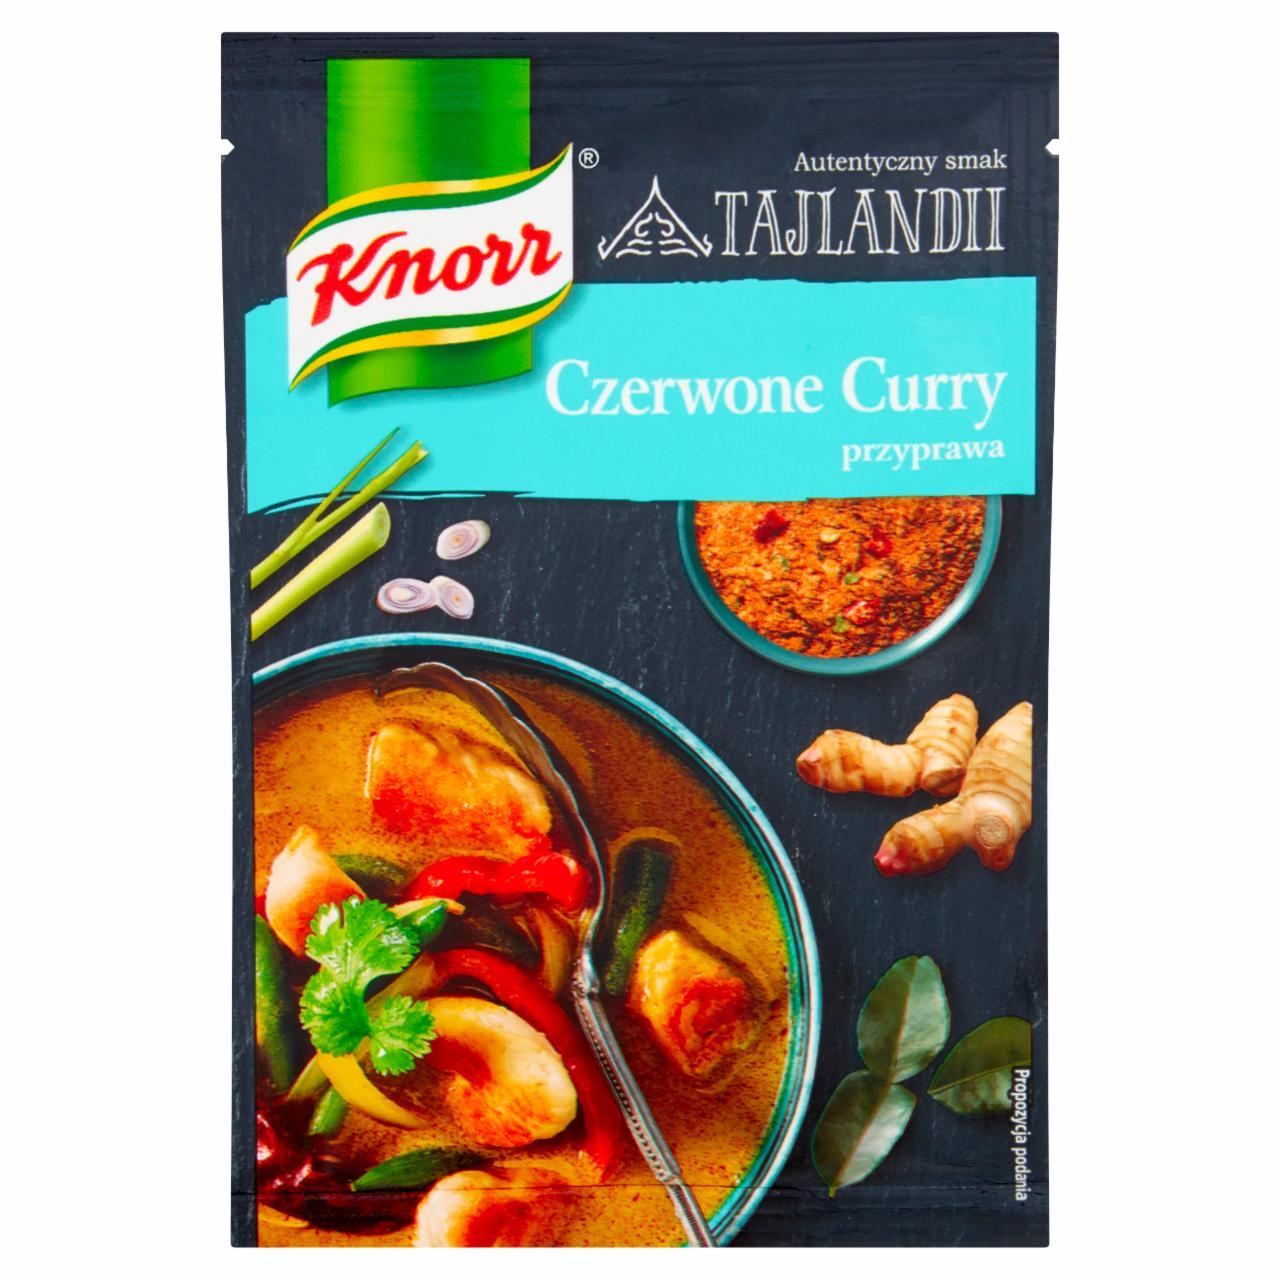 Zdjęcia - Knorr Przyprawa czerwone curry 15 g